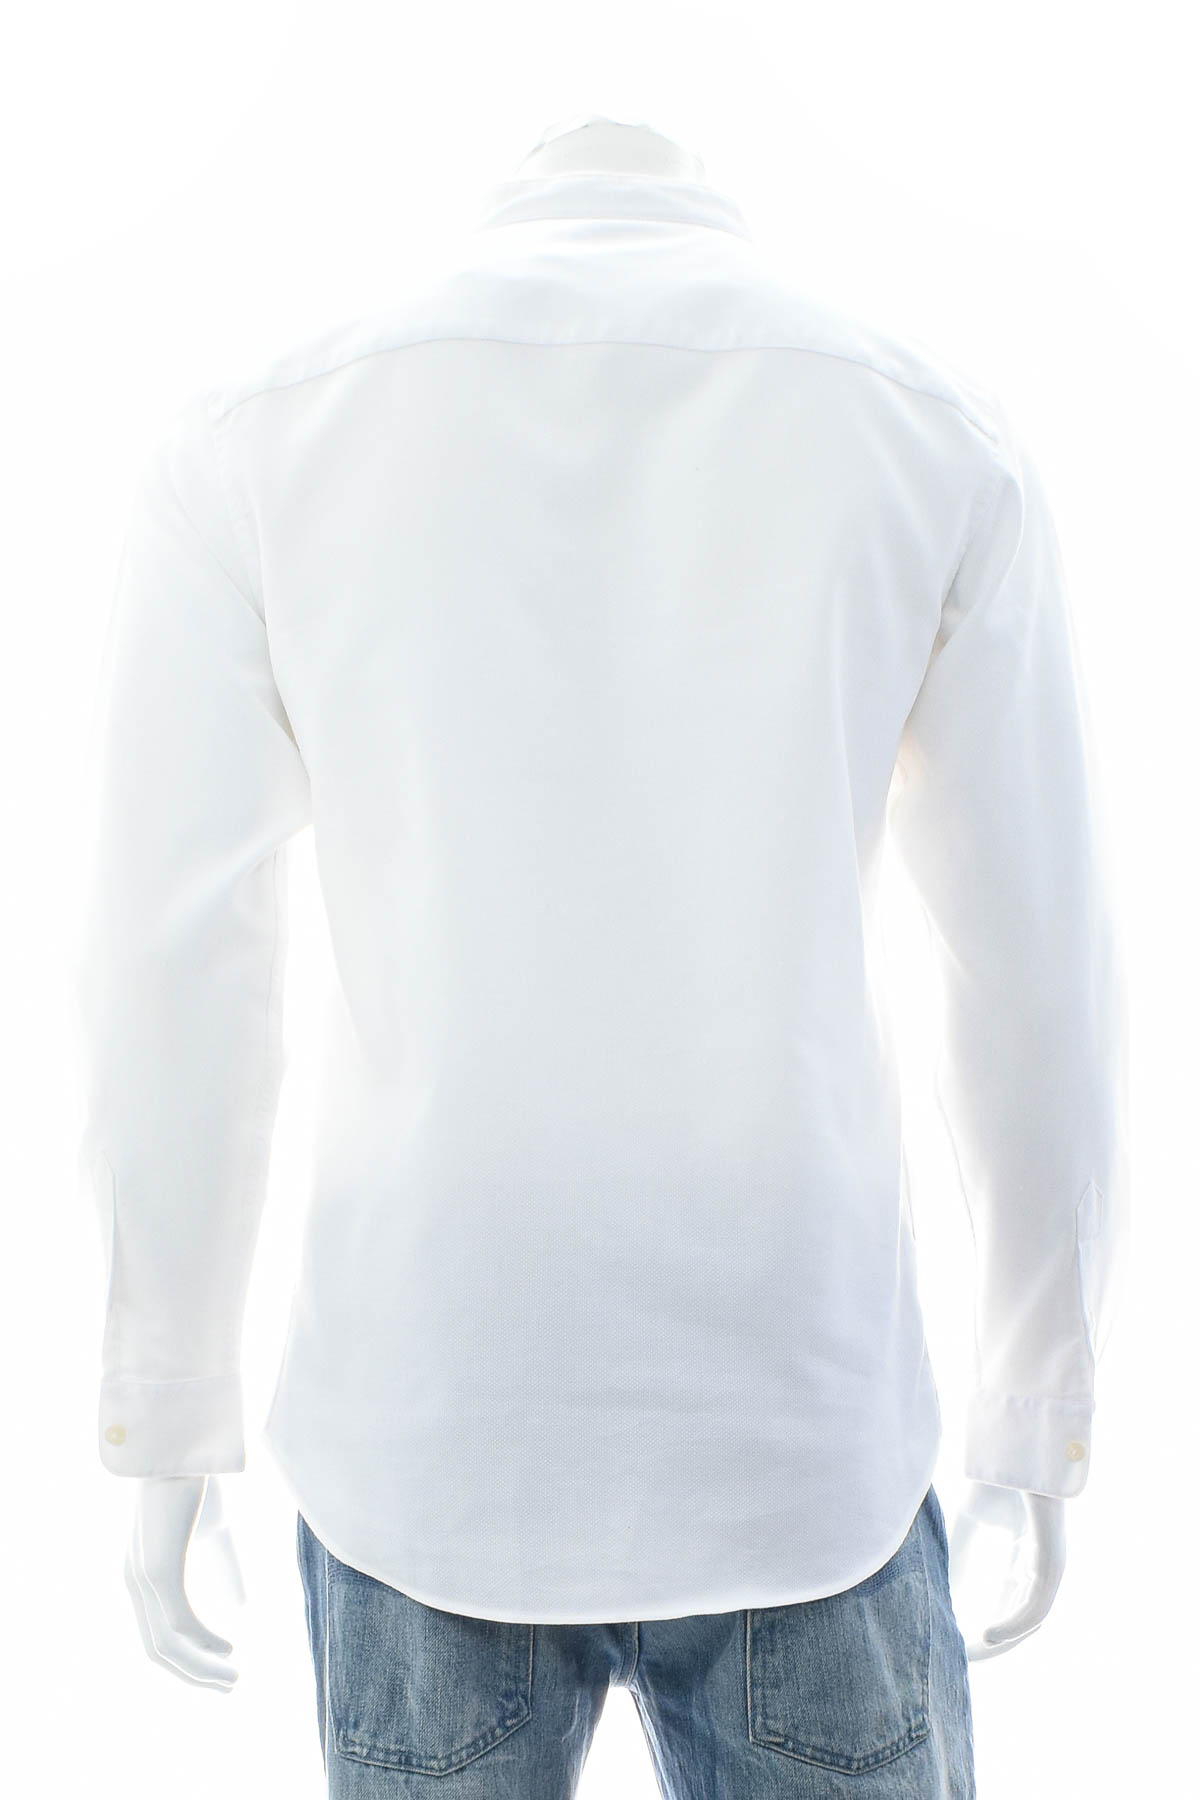 Ανδρικό πουκάμισο - ZARA - 1